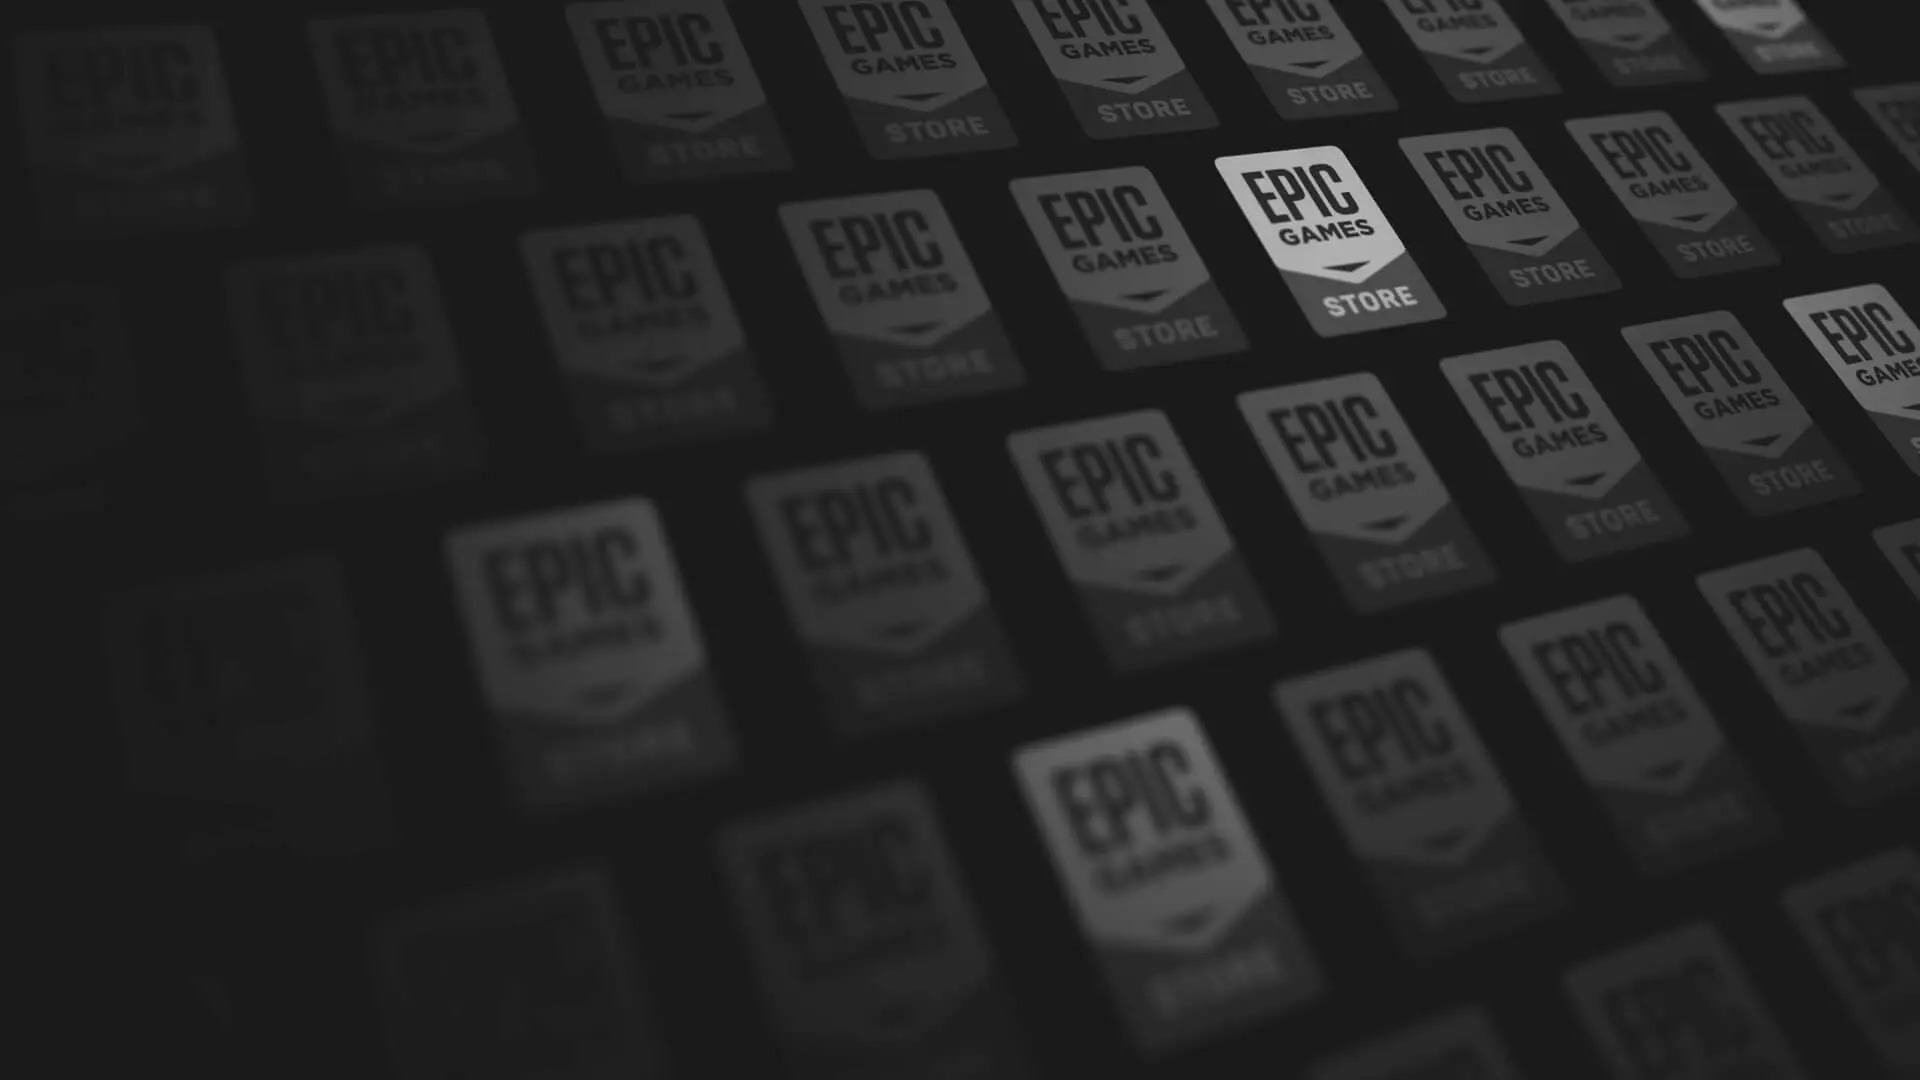 Promoção de fim de ano da Epic Games  Economize em jogos para PC — Epic  Games Store